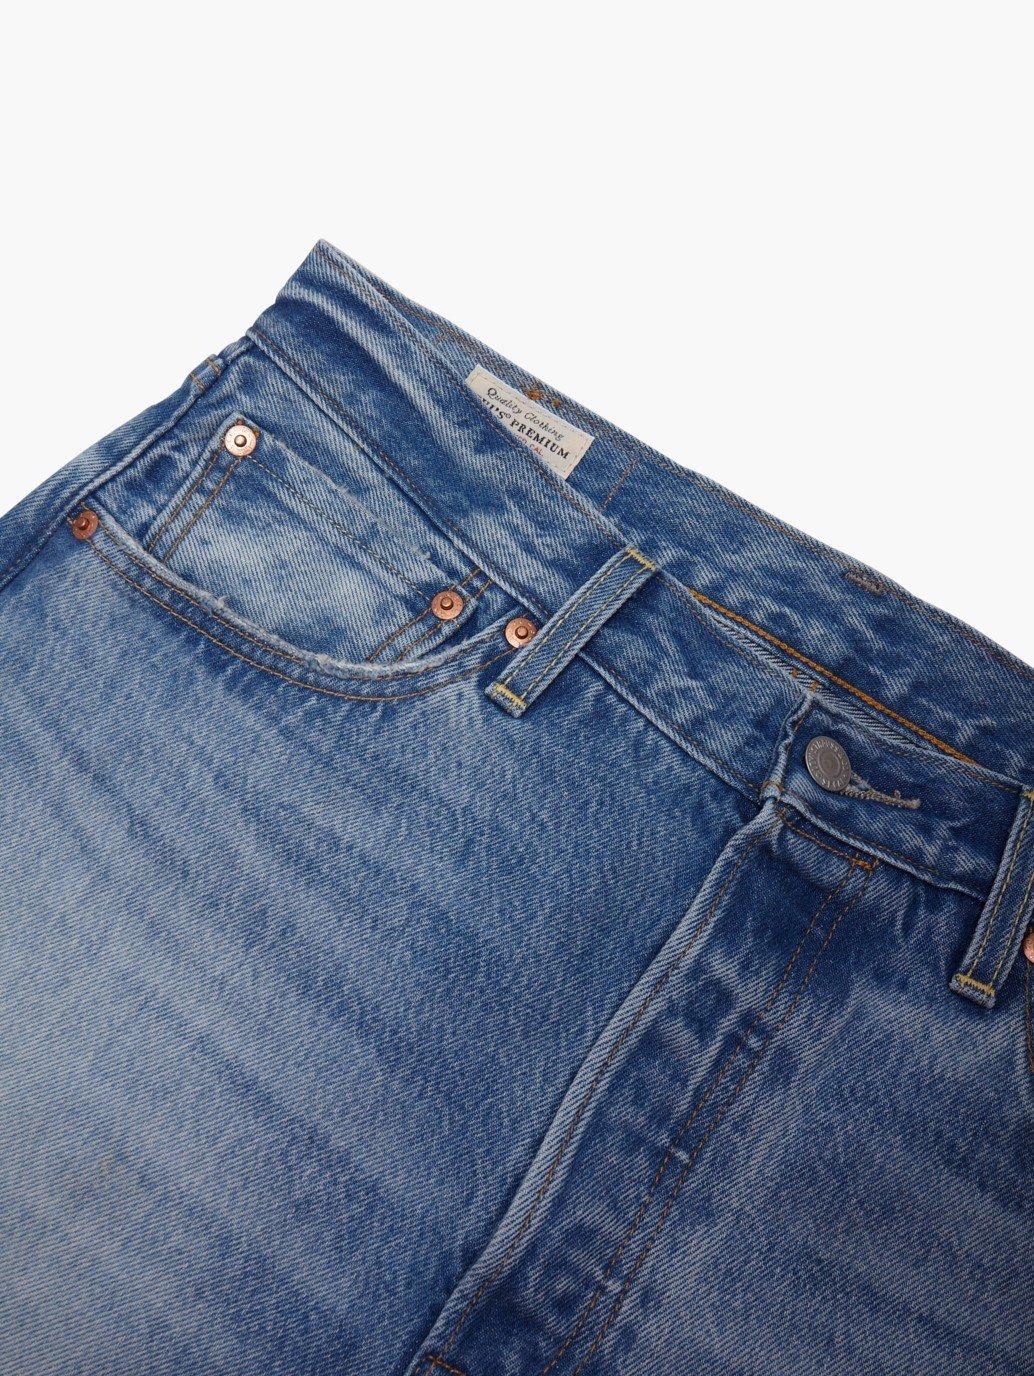 levis singapore mens 501 54 jeans A46770006 16 Details